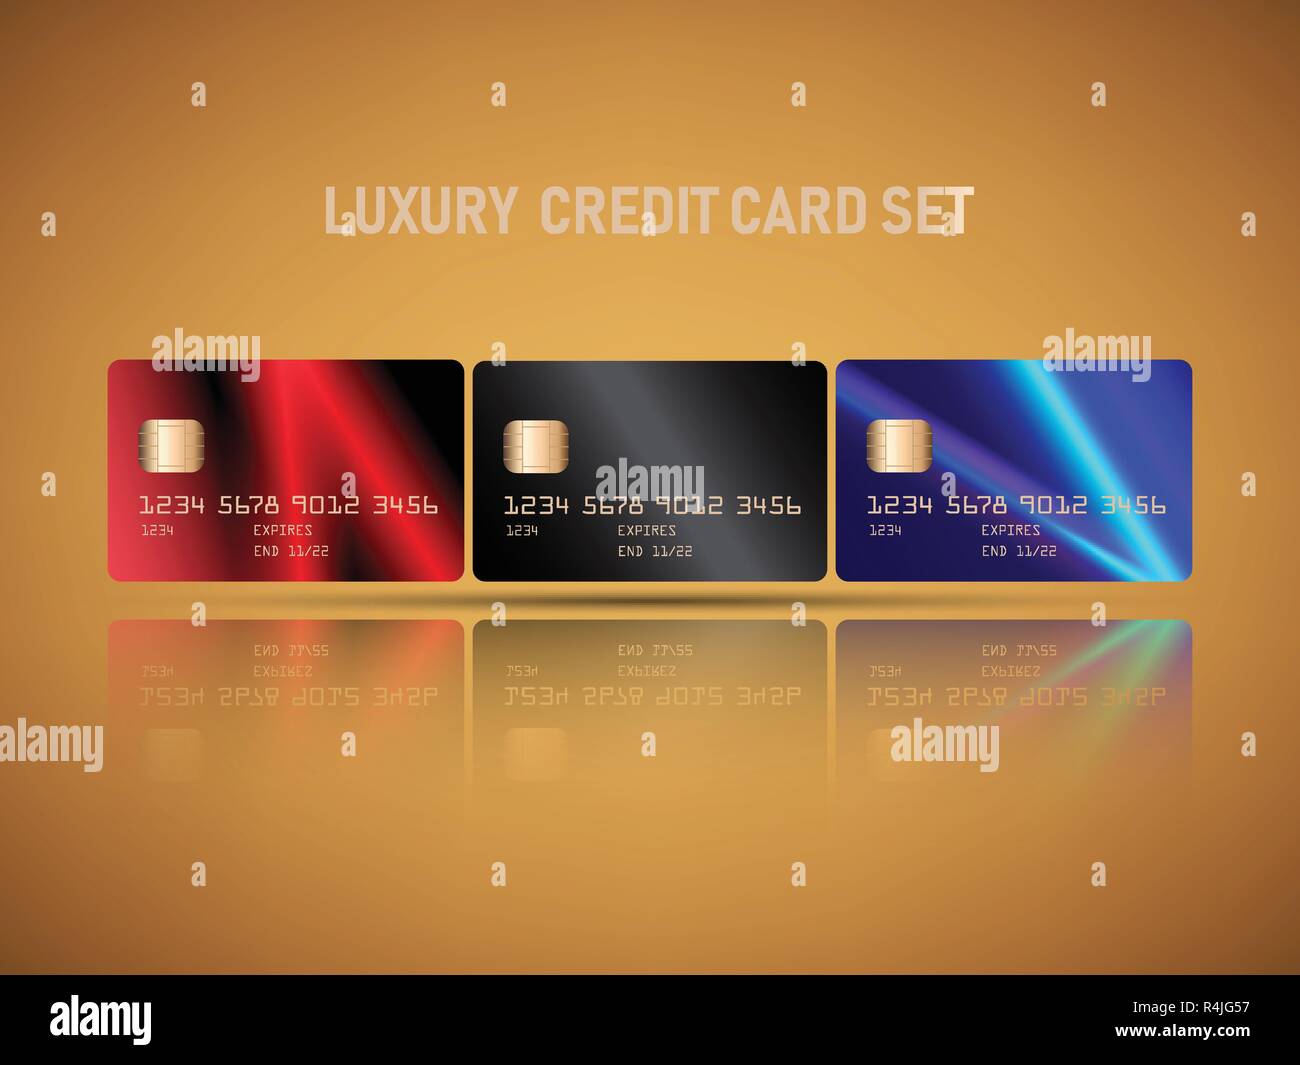 Der Vektor der realistischen Kreditkarten mit Luxus licht Aufflackern der  roten und blauen Farben abstrakt Design Hintergrund gesetzt  Stock-Vektorgrafik - Alamy